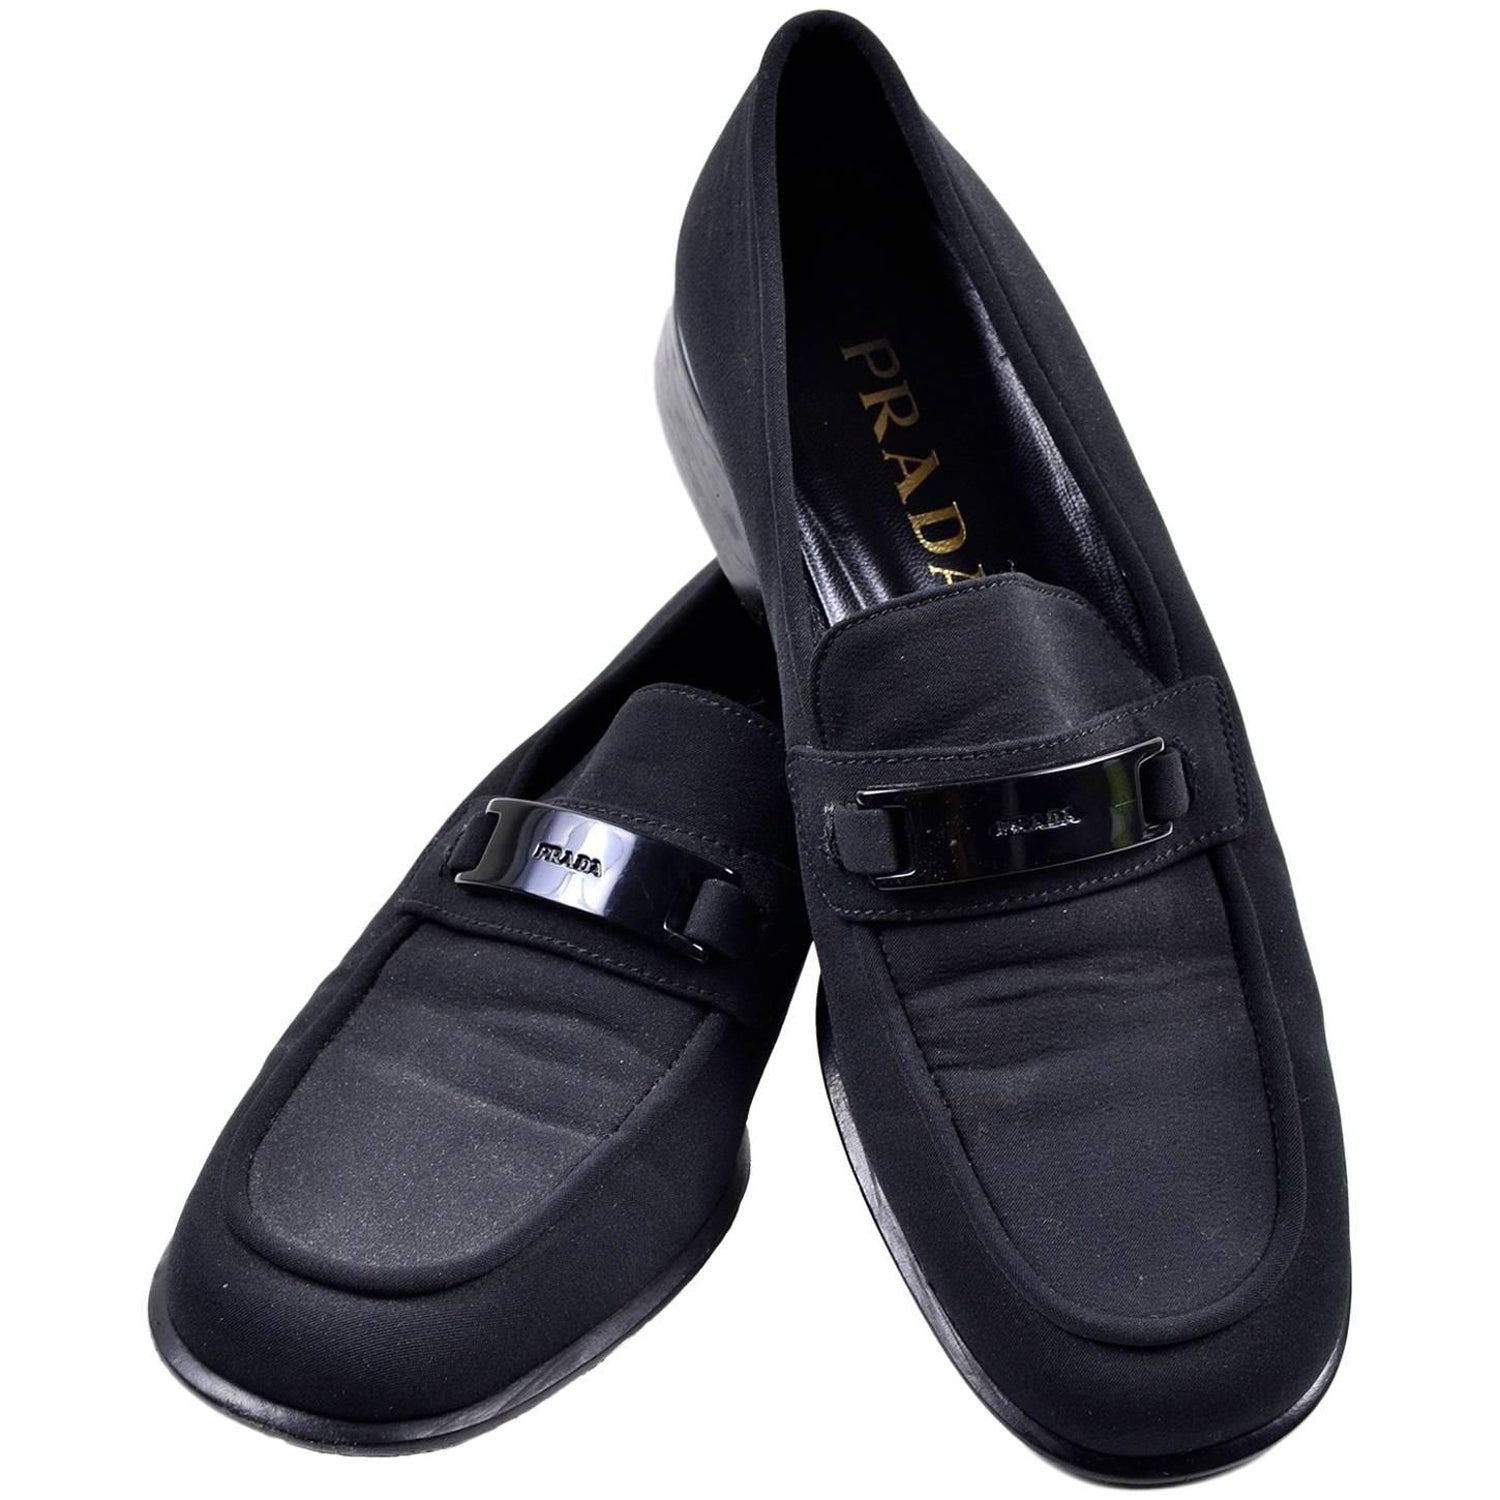 Vintage Prada Shoes - 5 For Sale on 1stDibs | vintage prada loafers, old  school prada shoes, prada vintage shoes